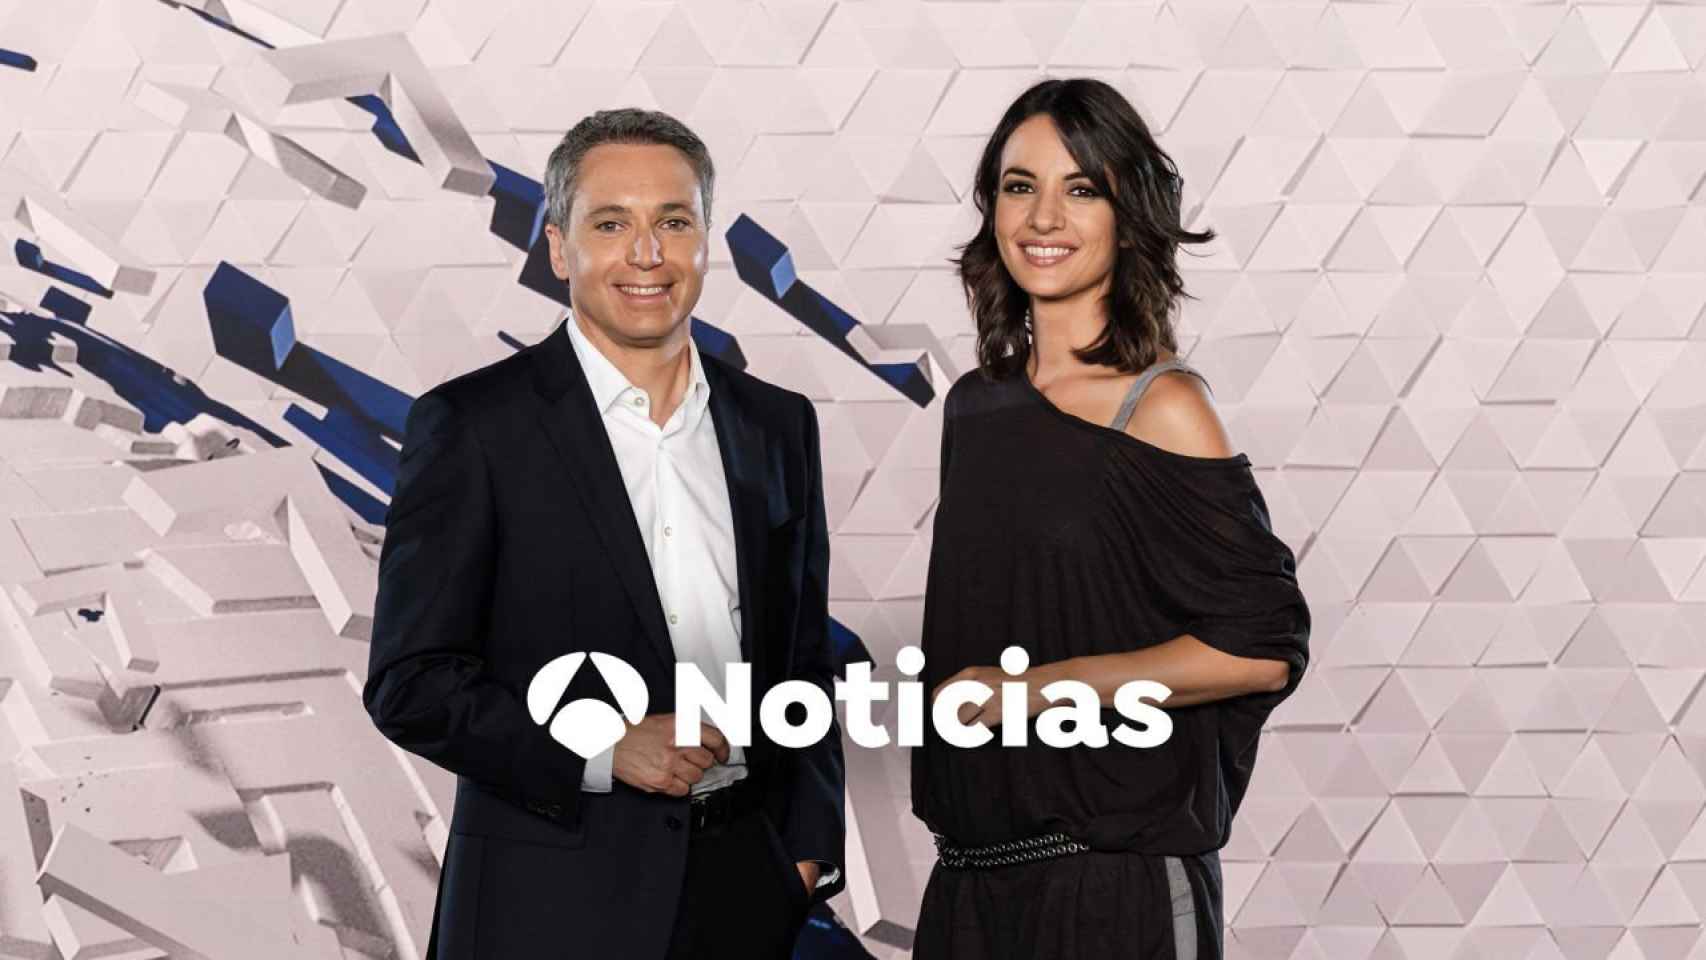 Vicente Vallés y Esther Vaquero presentan el informativo más visto de la televisión.